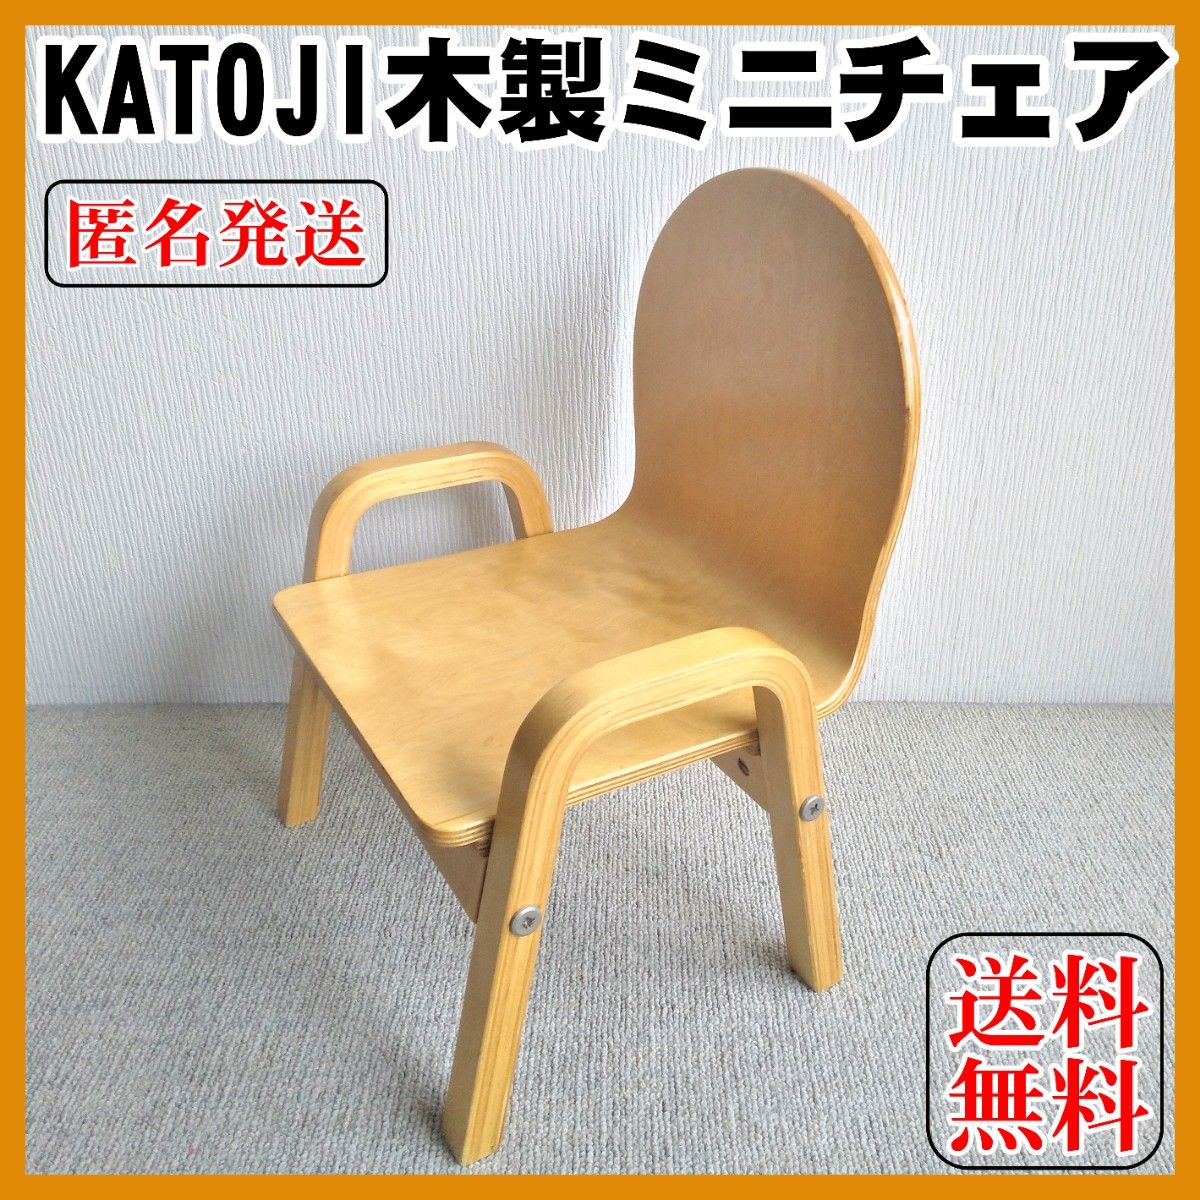 KATOJI キッズチェア - ベビー用家具